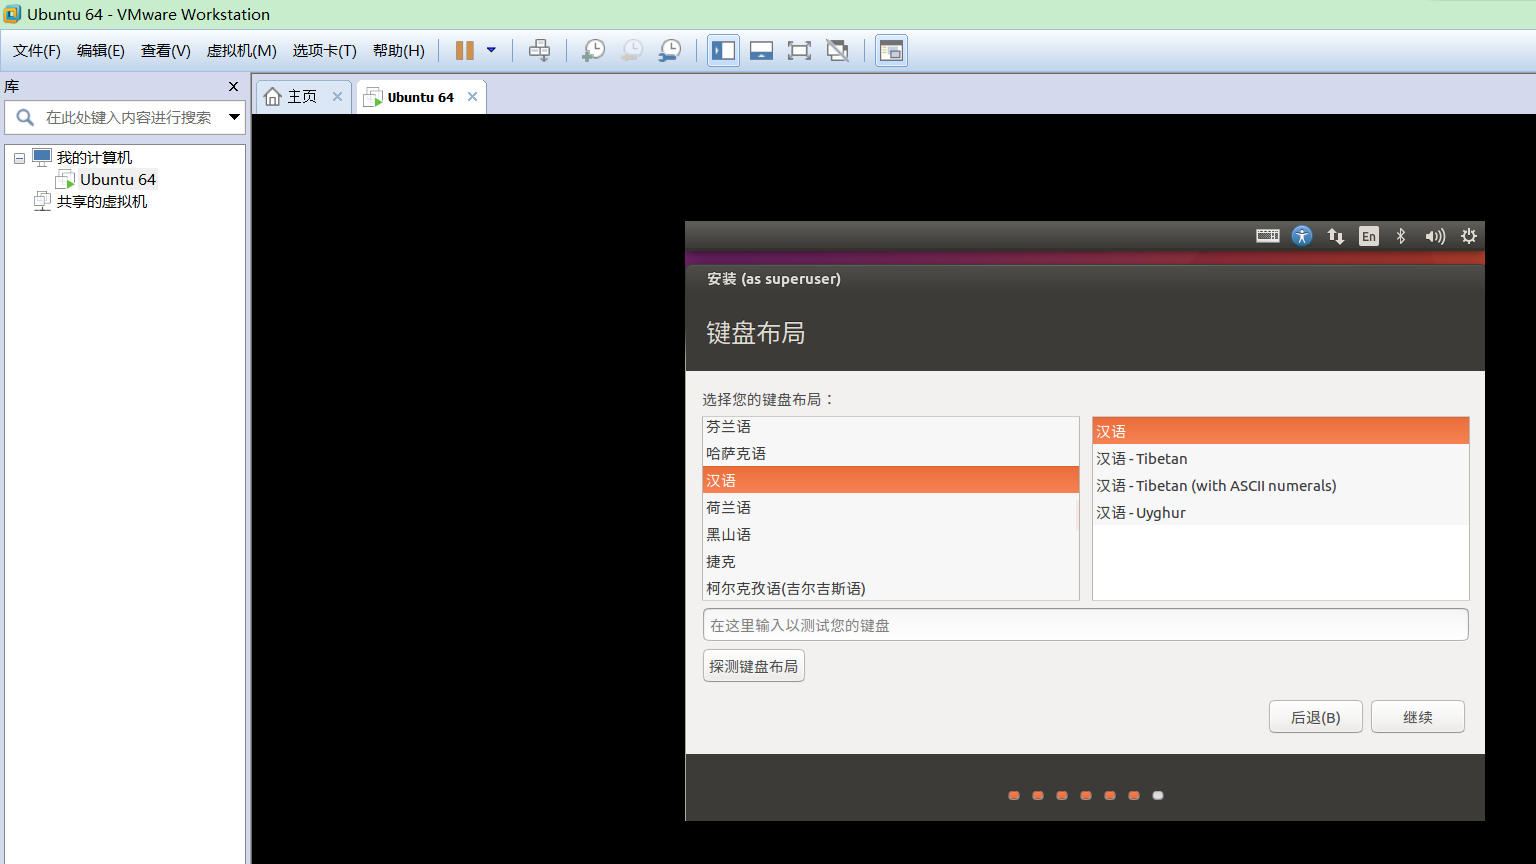 VMware14.0.0版本虚拟机安装Ubuntu16.04 LTS版本Linux系统图文教程